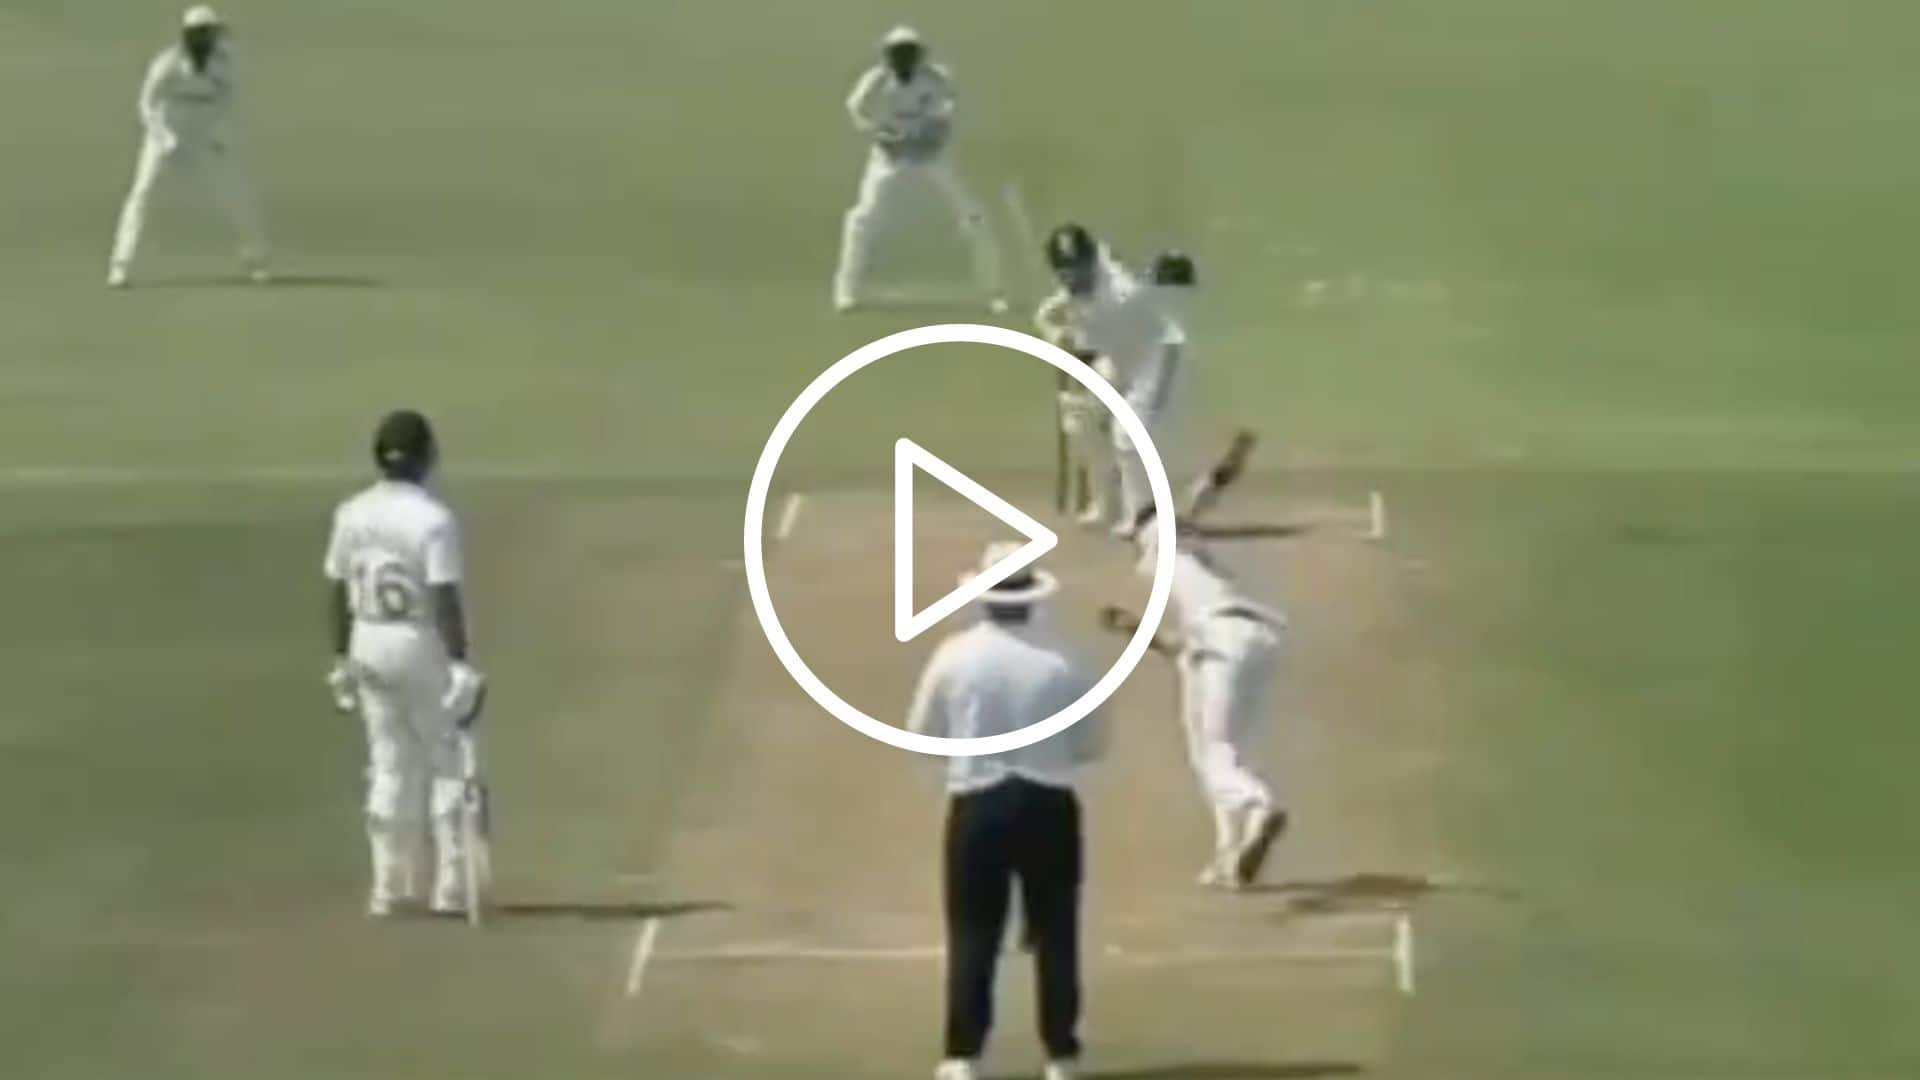 [Watch] Sarfaraz Khan Slams 61-Ball Century Against Rohit Sharma & Virat Kohli Ahead Of SA Tests